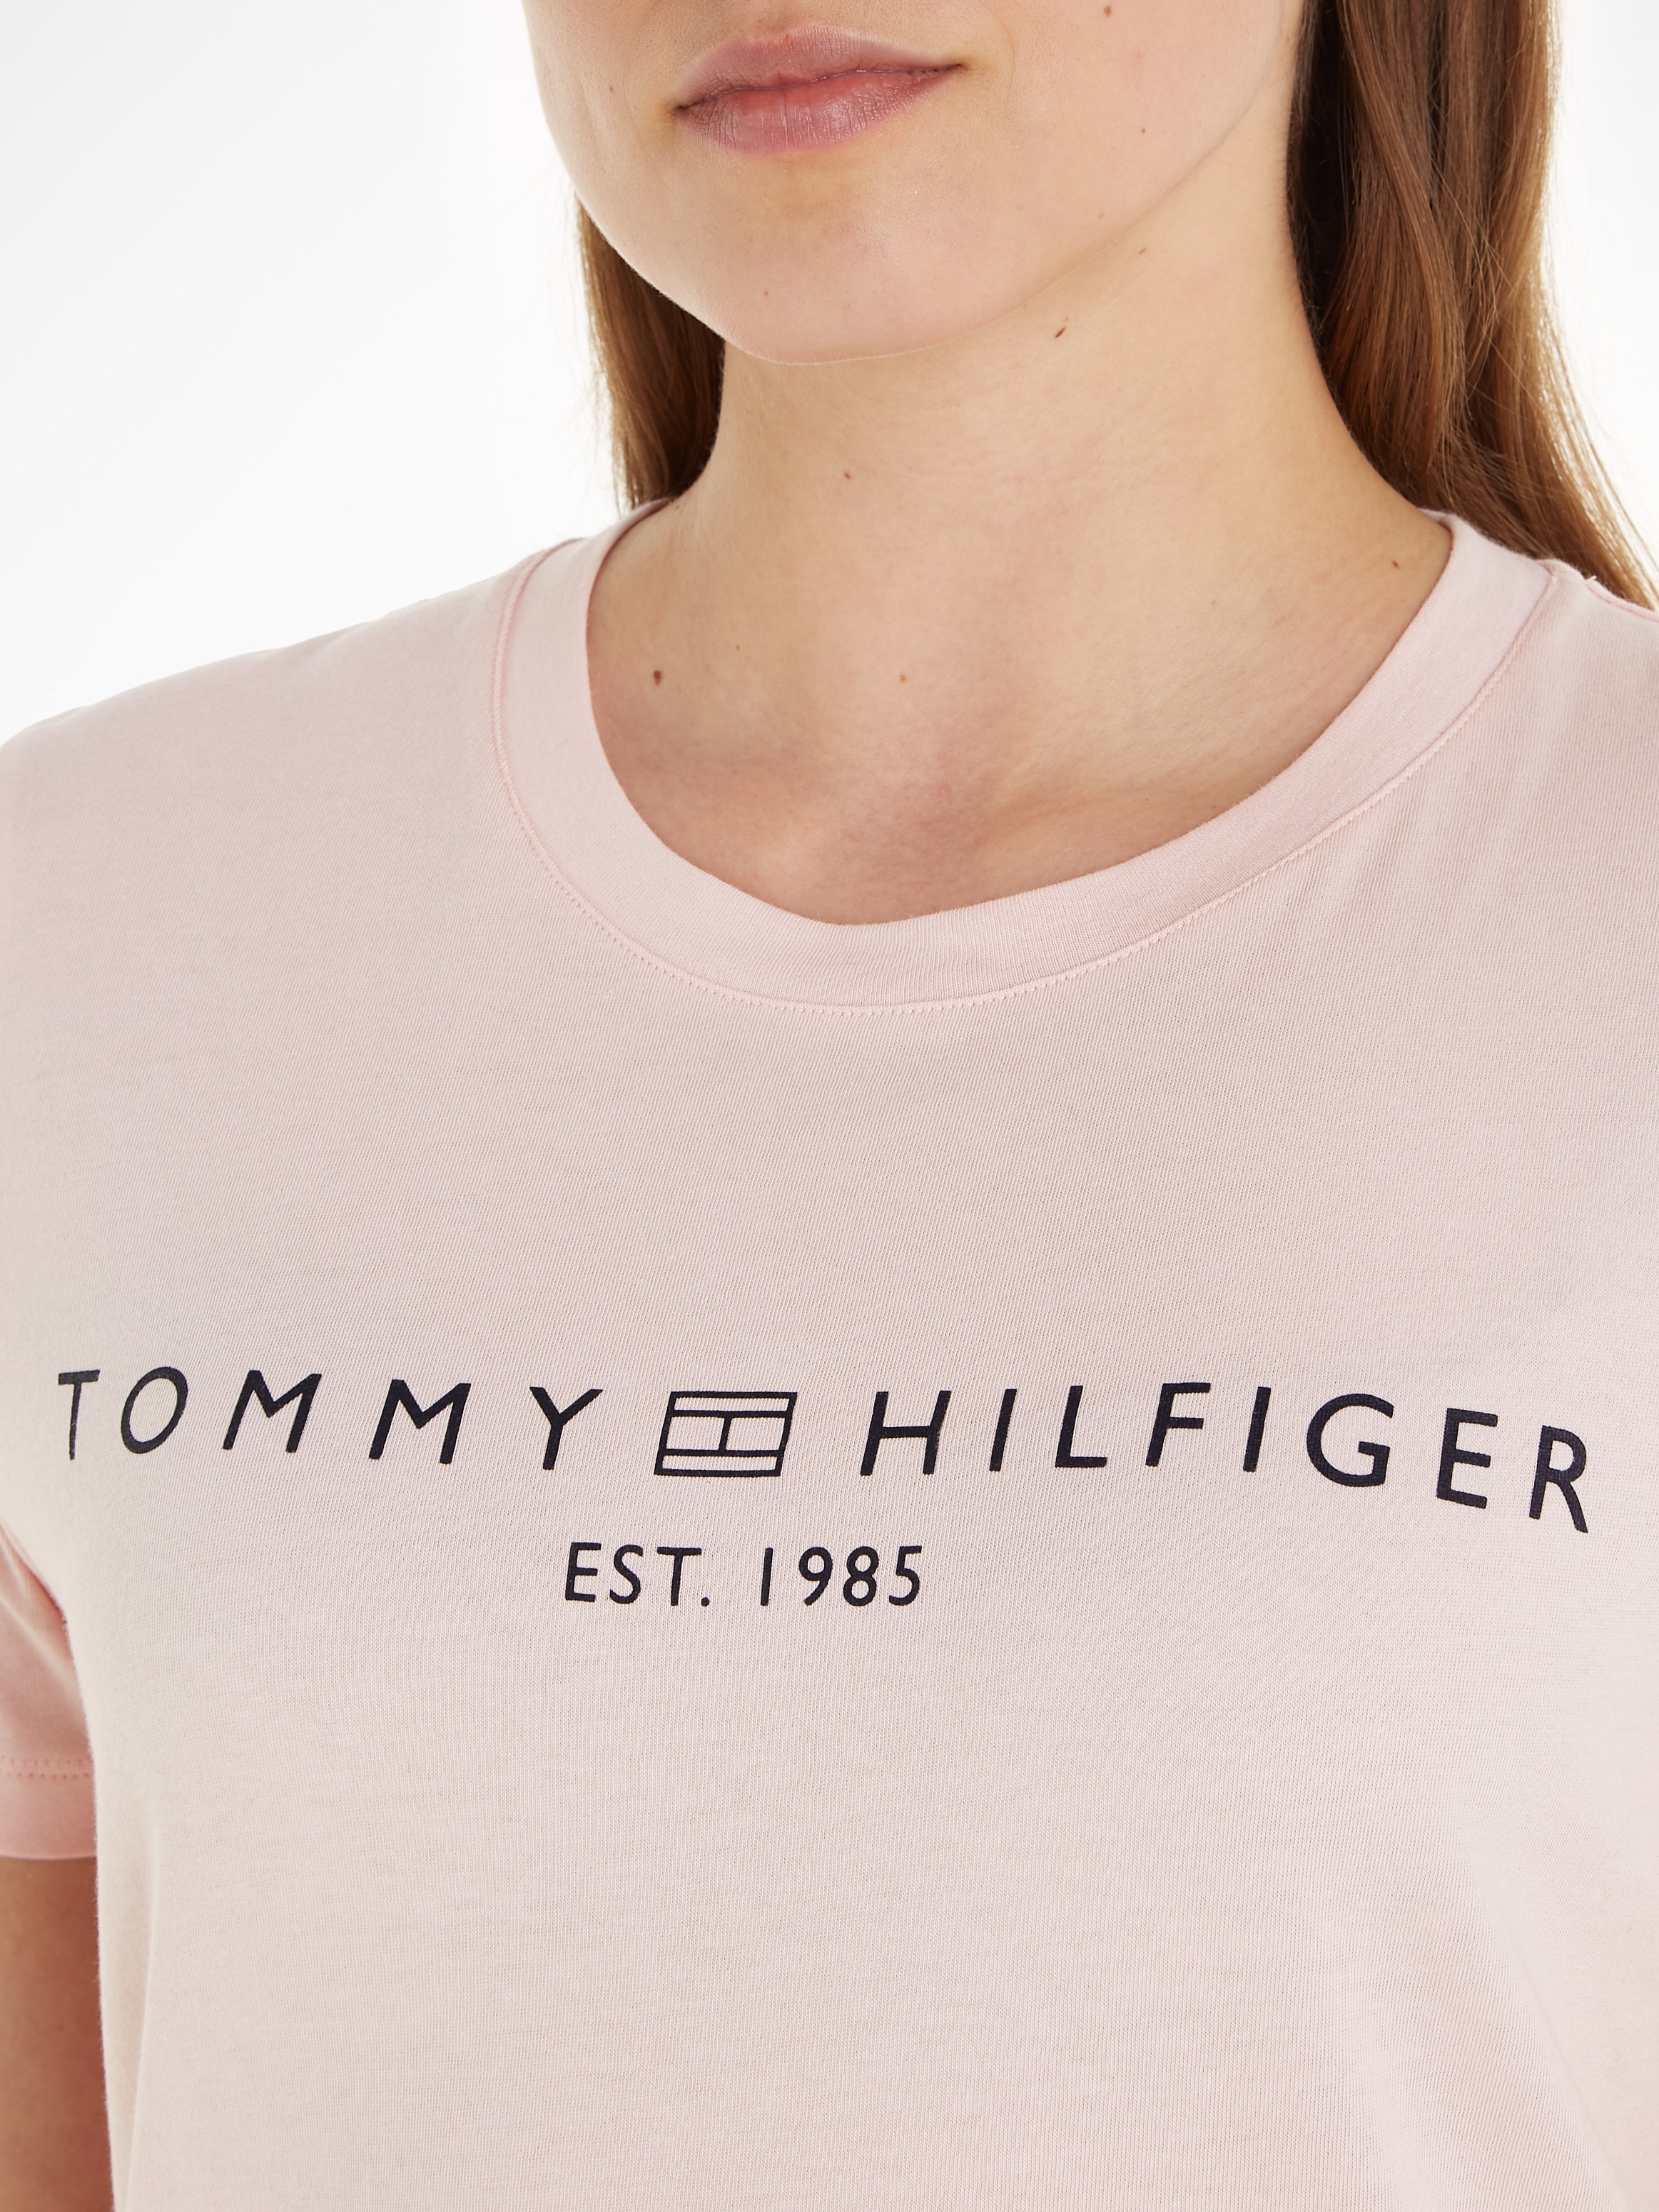 online CORP mit Brust »REG Hilfiger Markenlabel auf T-Shirt LOGO Tommy der SS«, C-NK